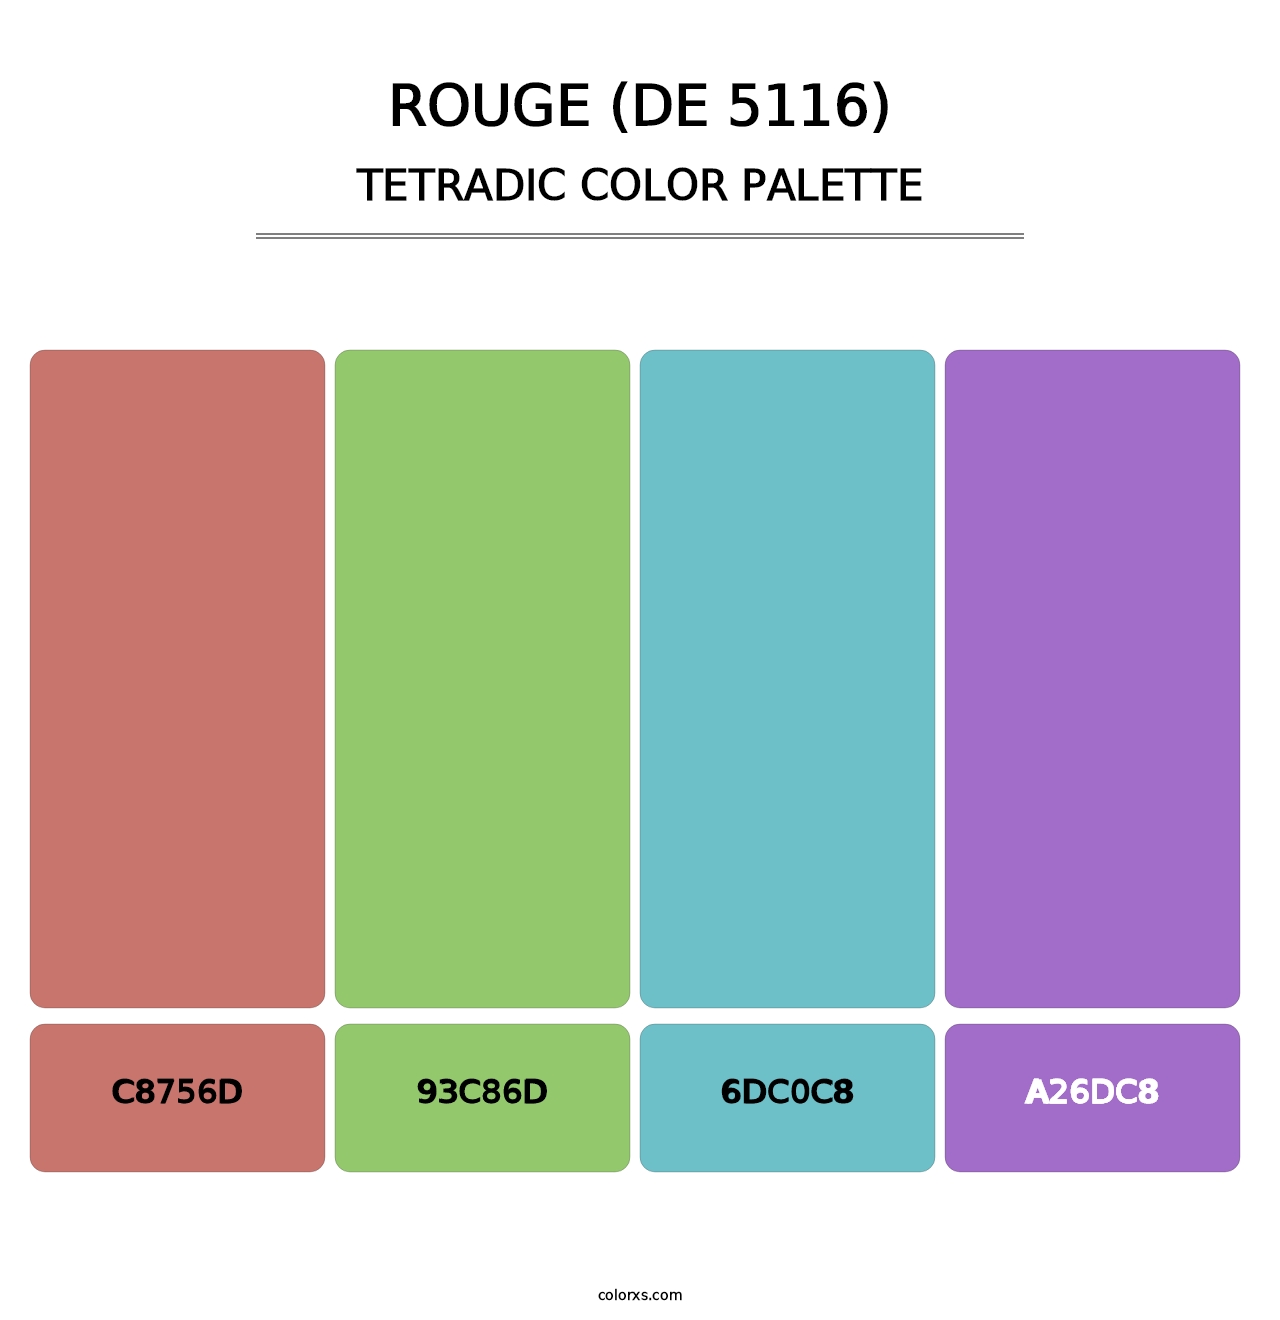 Rouge (DE 5116) - Tetradic Color Palette